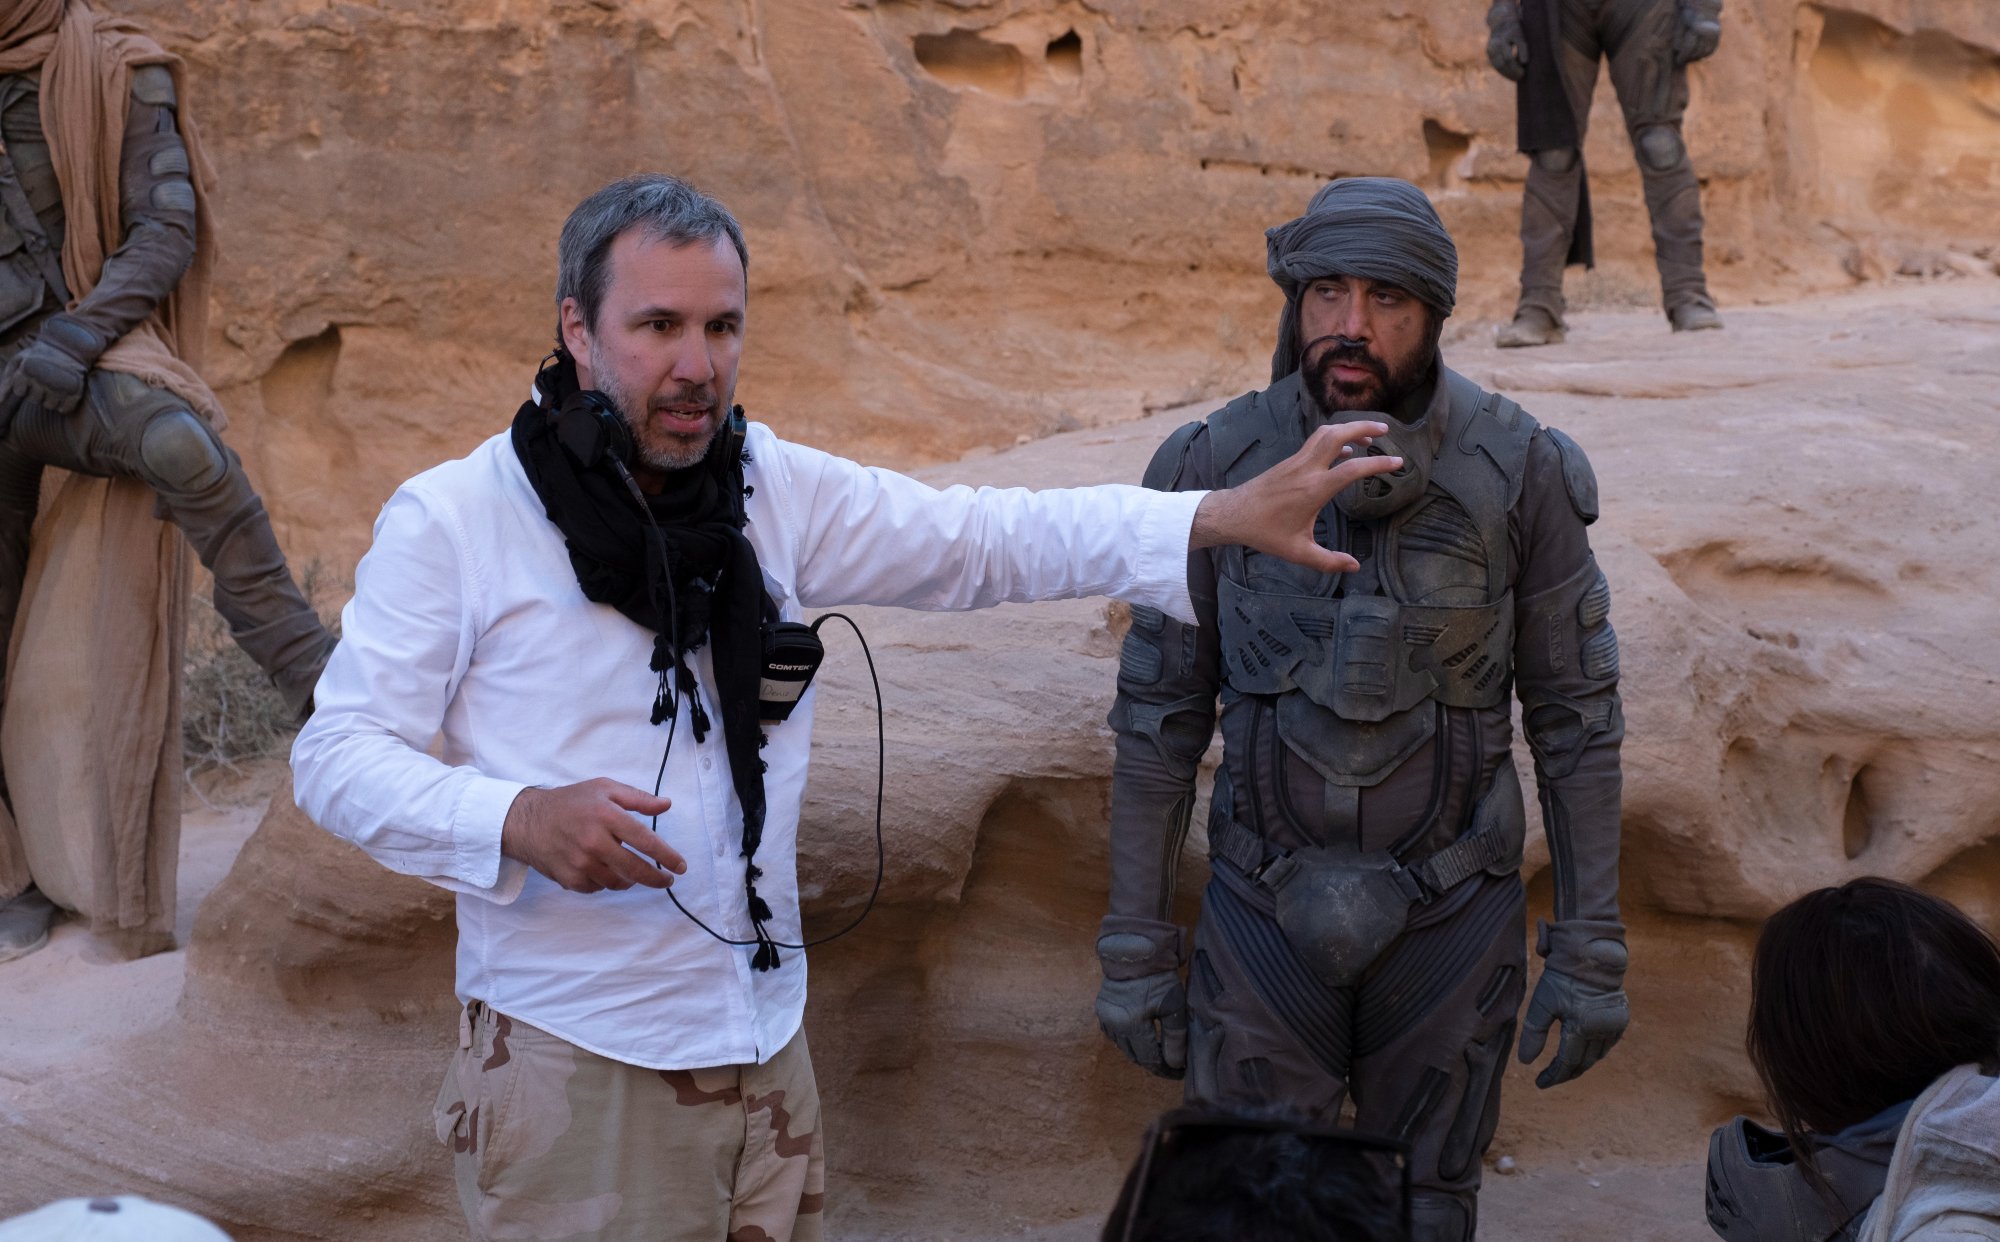 'Dune' filmmaker Denis Villeneuve and actor Javier Bardem on the set giving direction